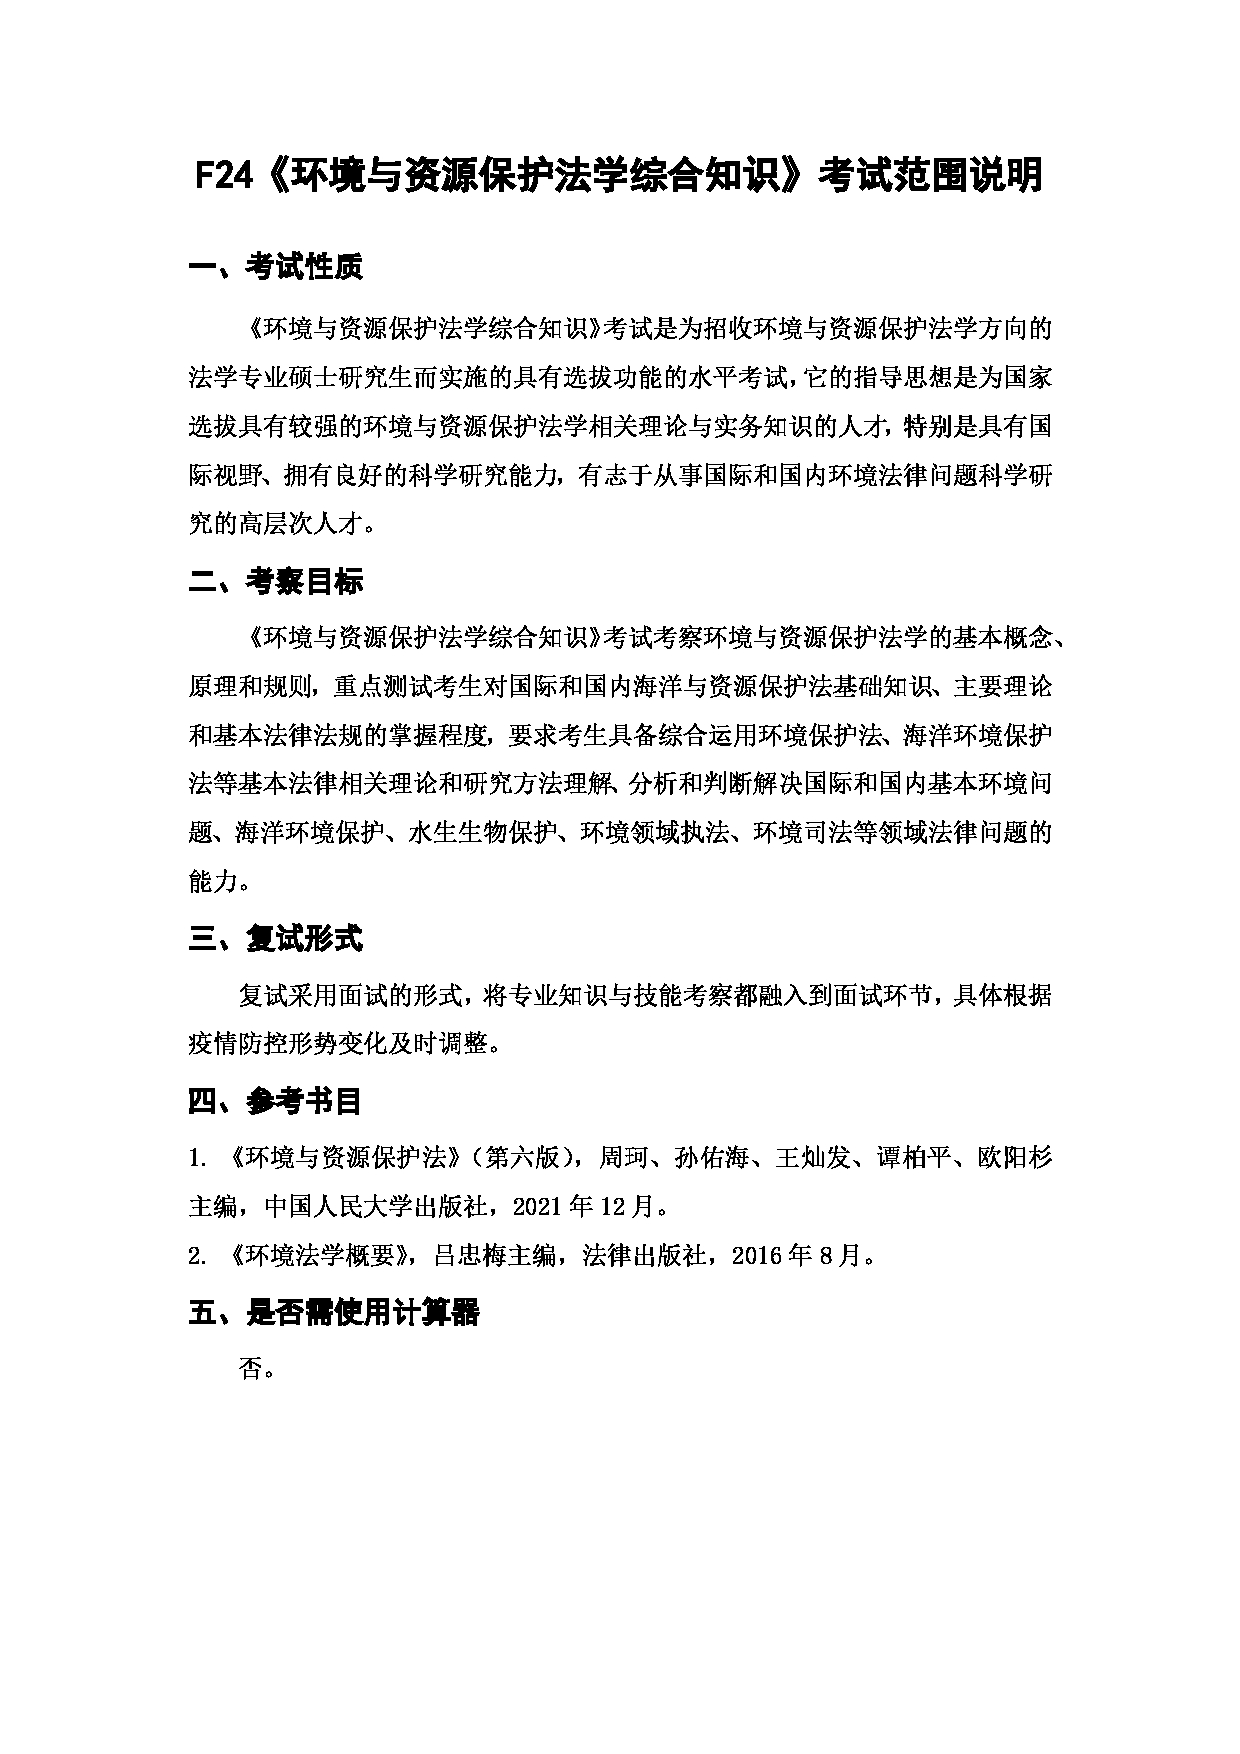 上海海洋大学2023年考研自命题科目 F24《环境与资源保护fa学综合知识》考试范围第1页